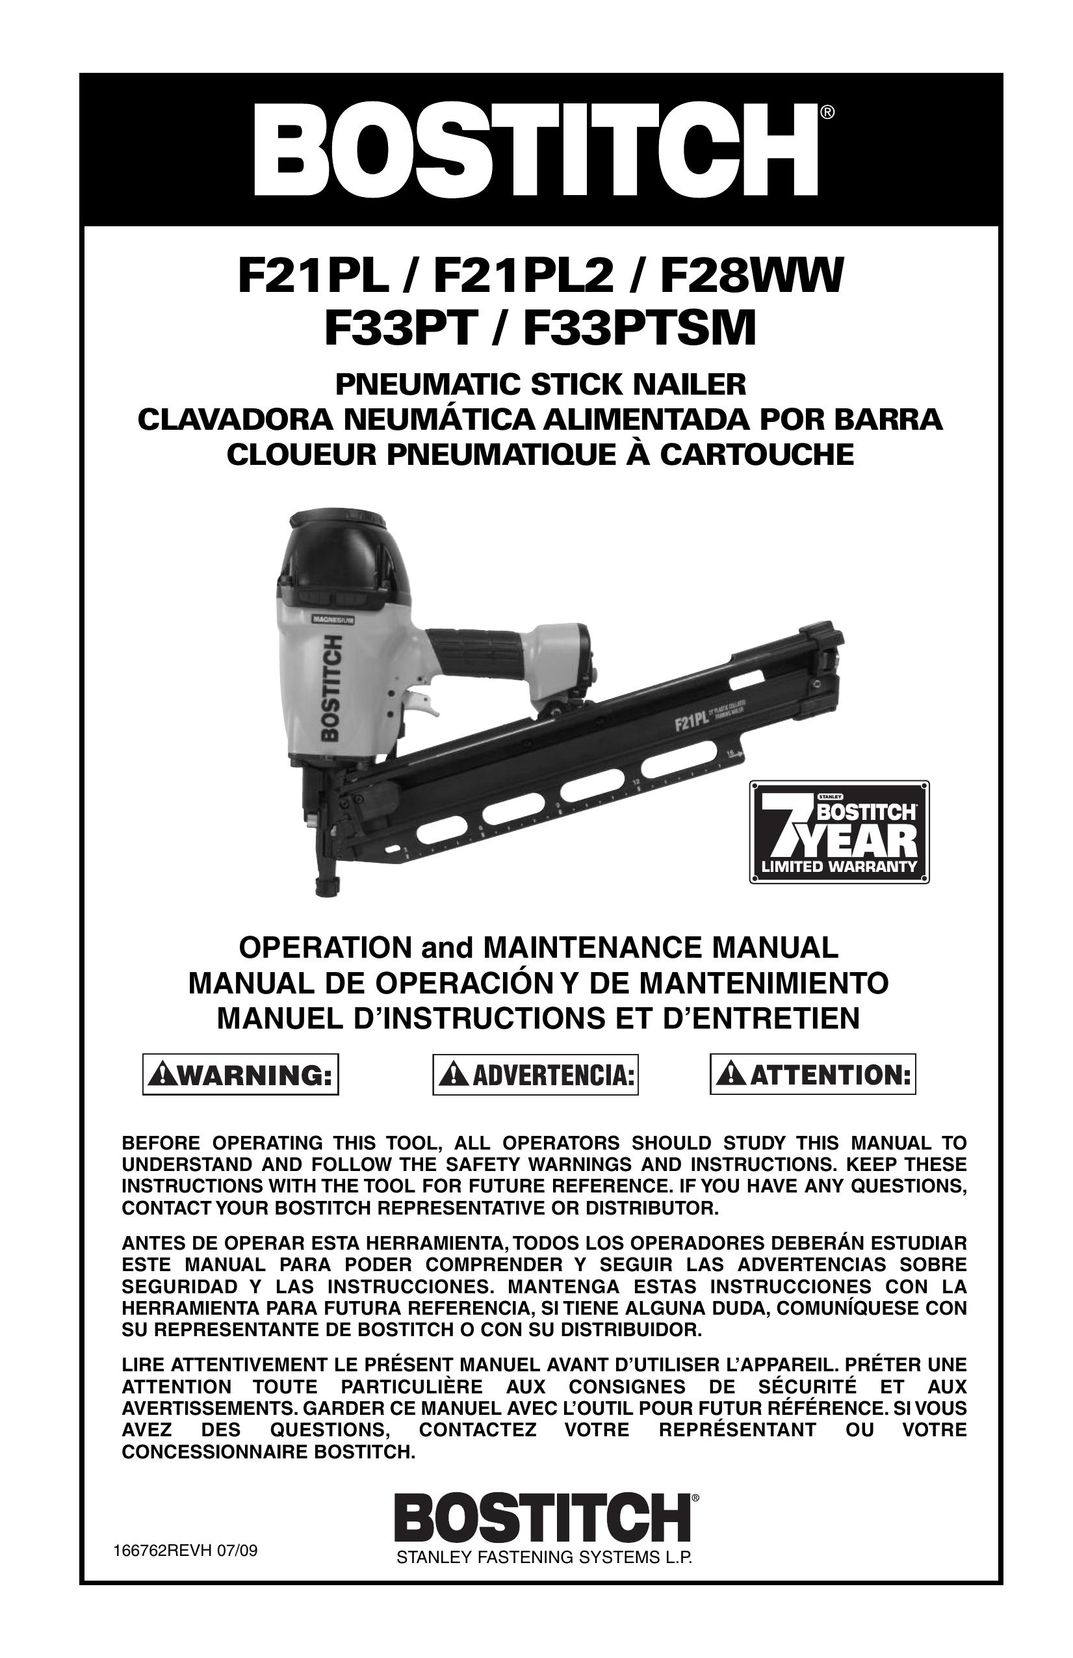 Bostitch F33PTSM Nail Gun User Manual